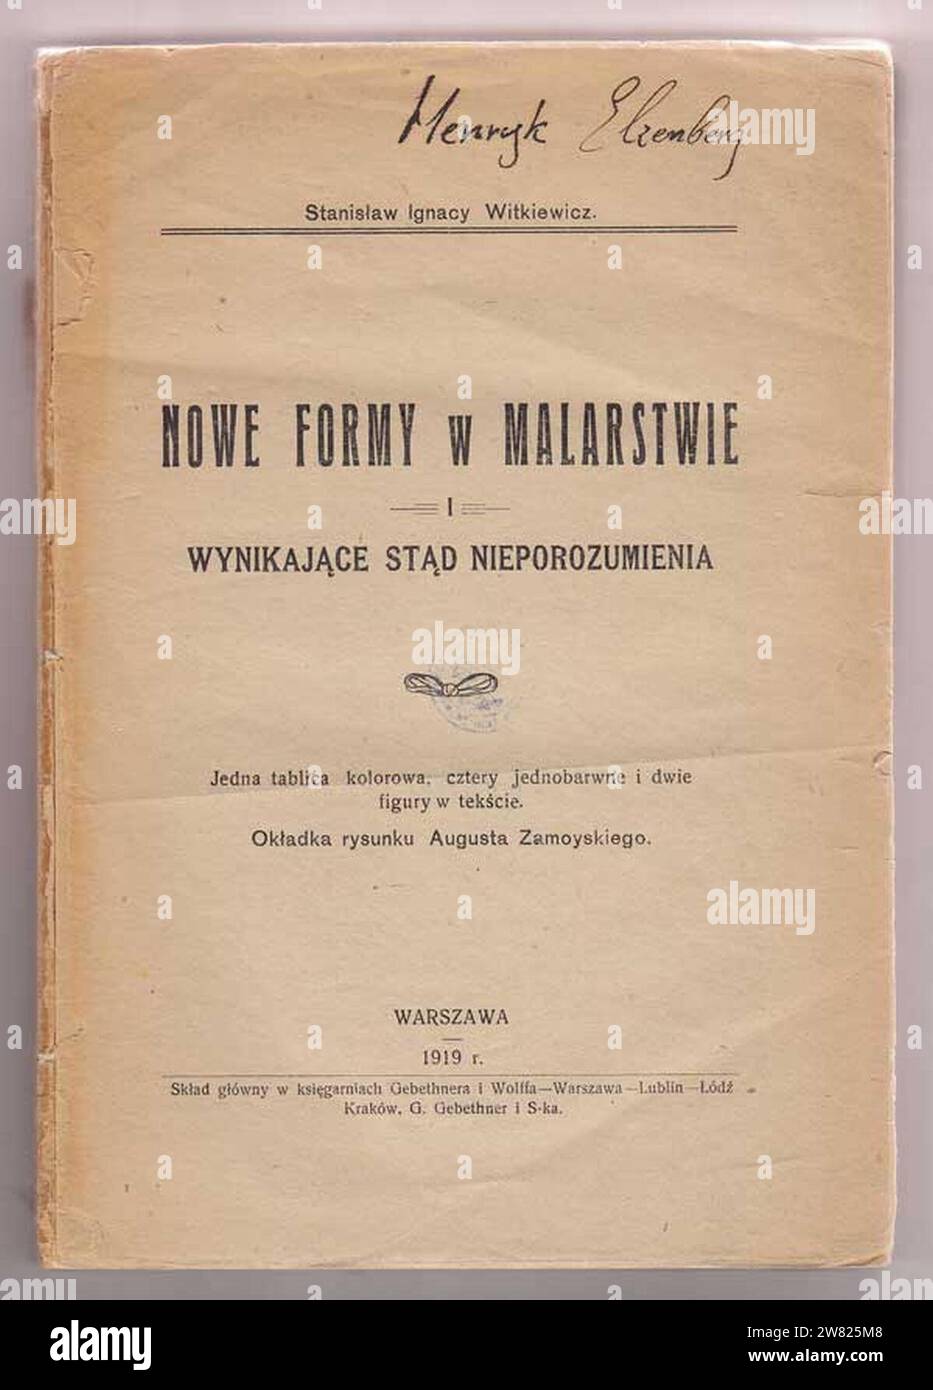 Witkacy - Nowe formy W malarstwie (1919). Foto Stock